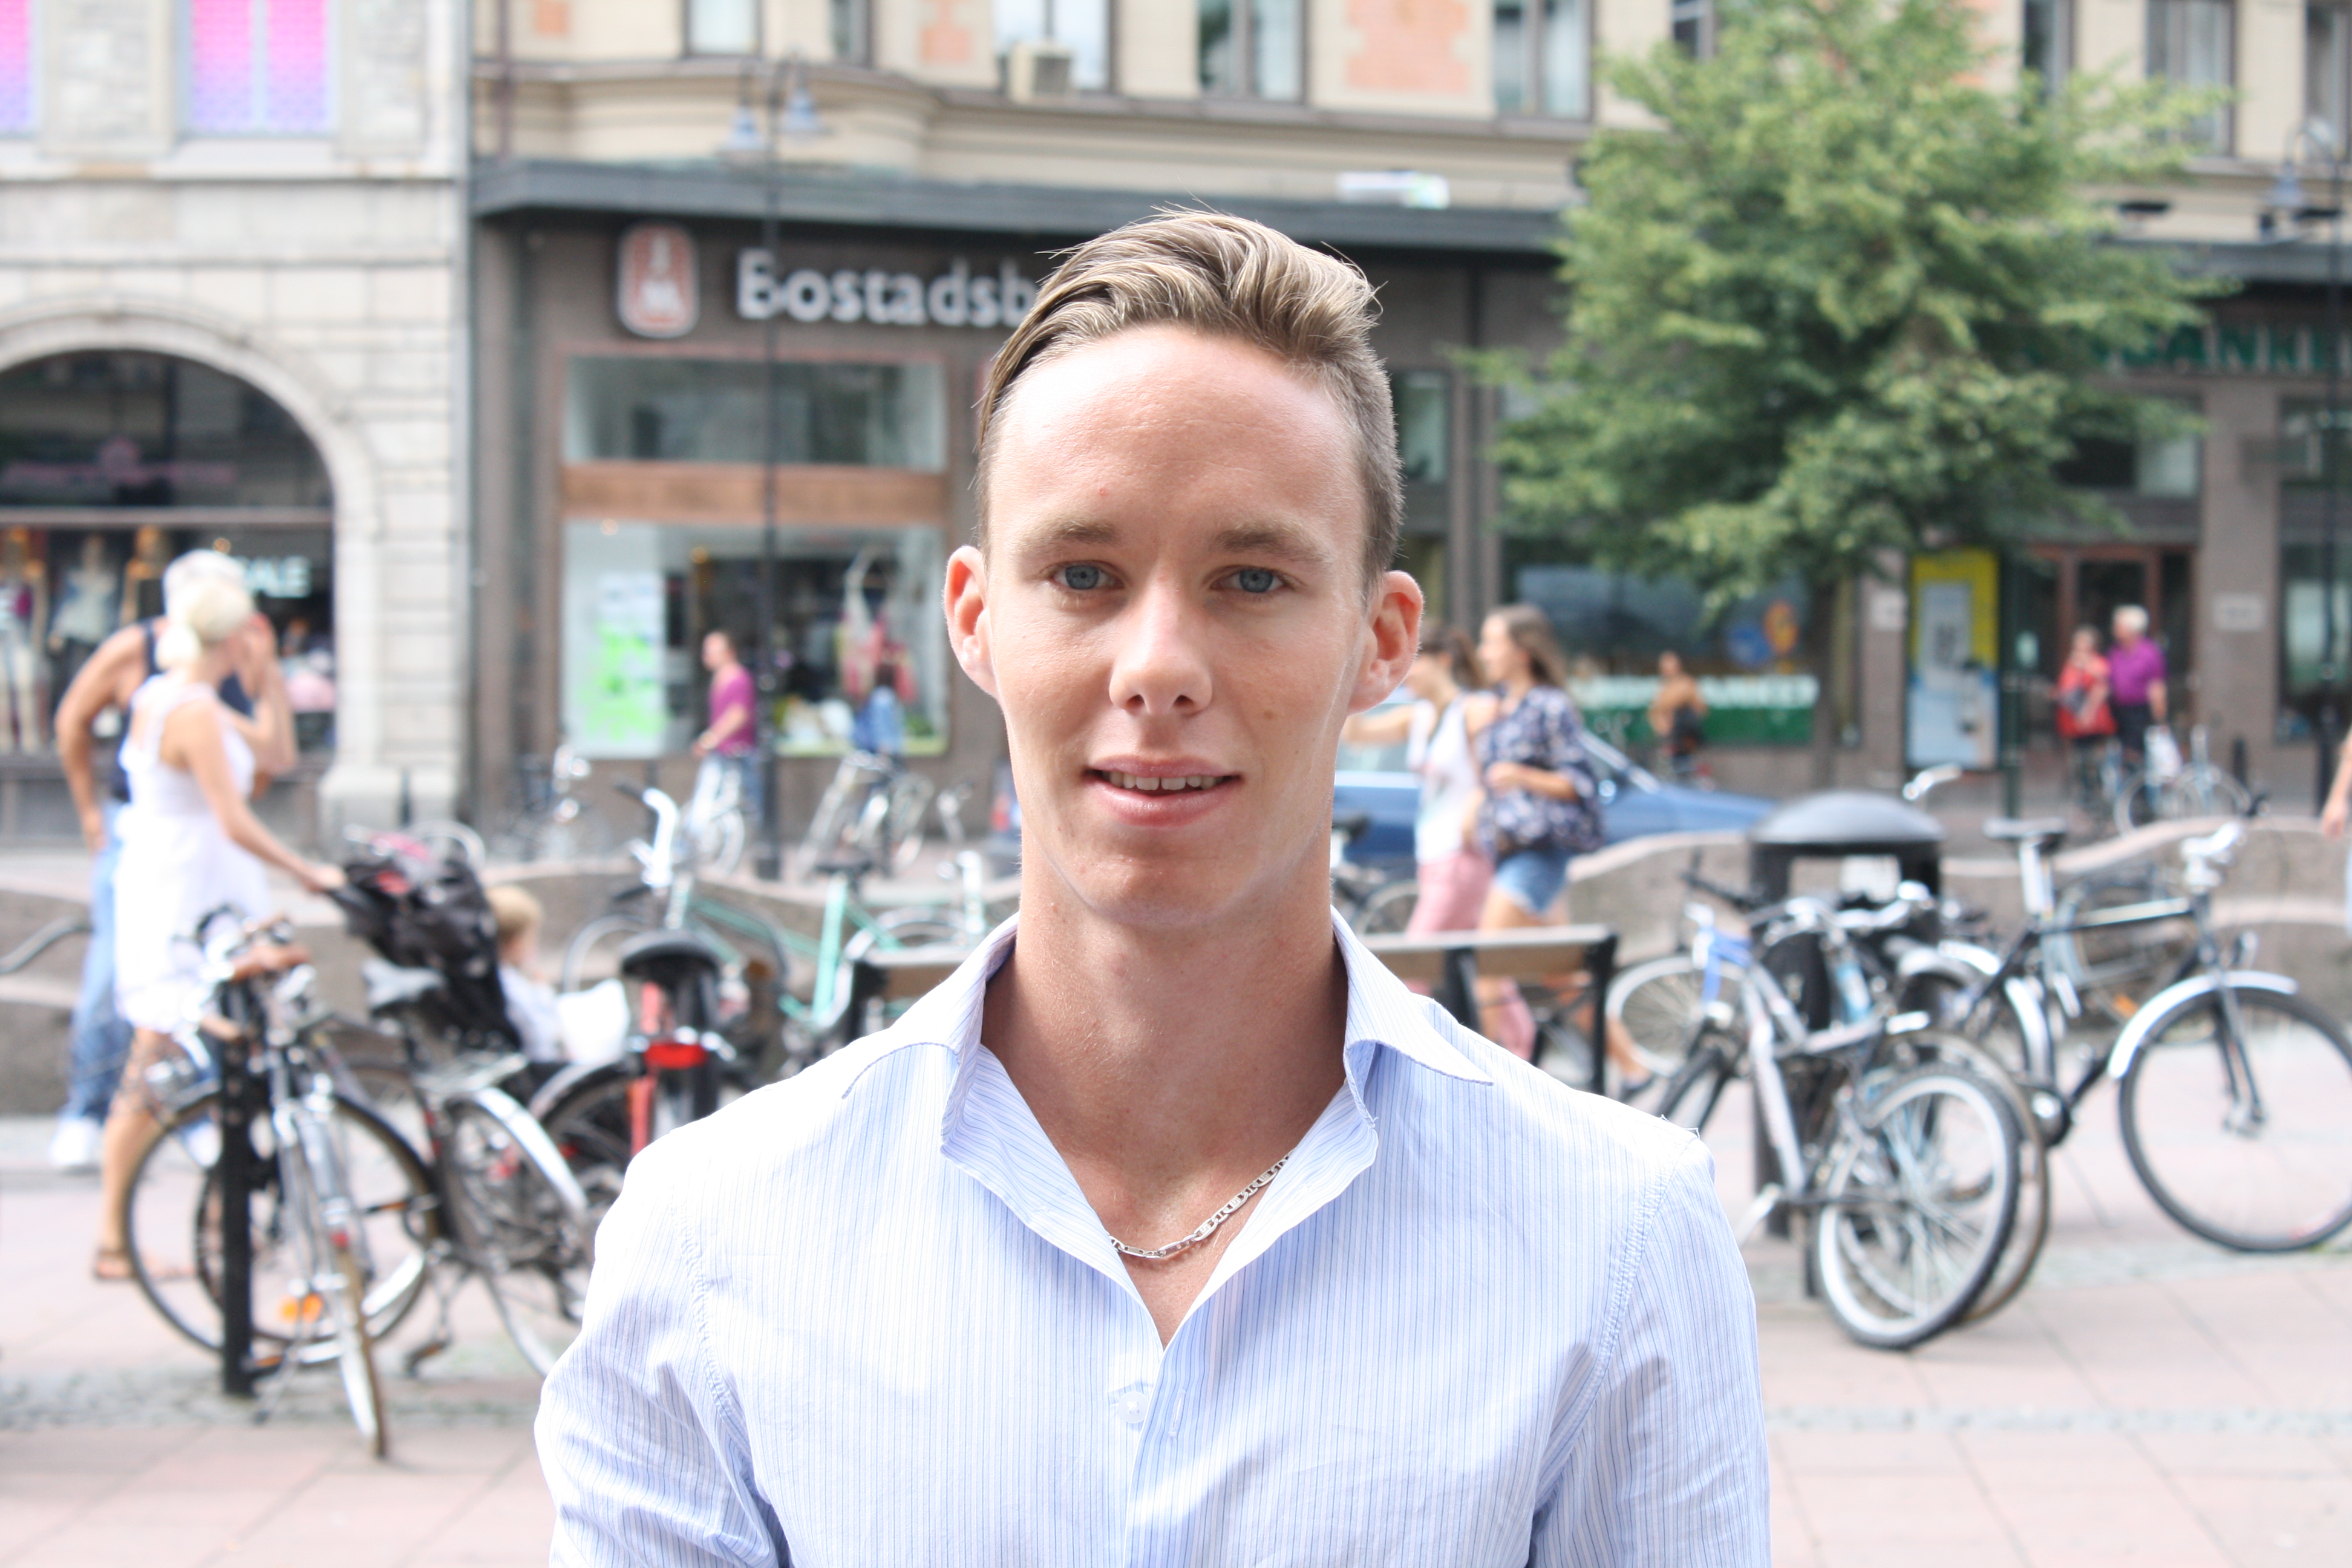 Andreas Torstensson, 20 år, receptionist, Falkenberg.
– Jag är inte rädd men man tänker väl på det eftersom det händer i Norge. Klart att det kan hända i Sverige.